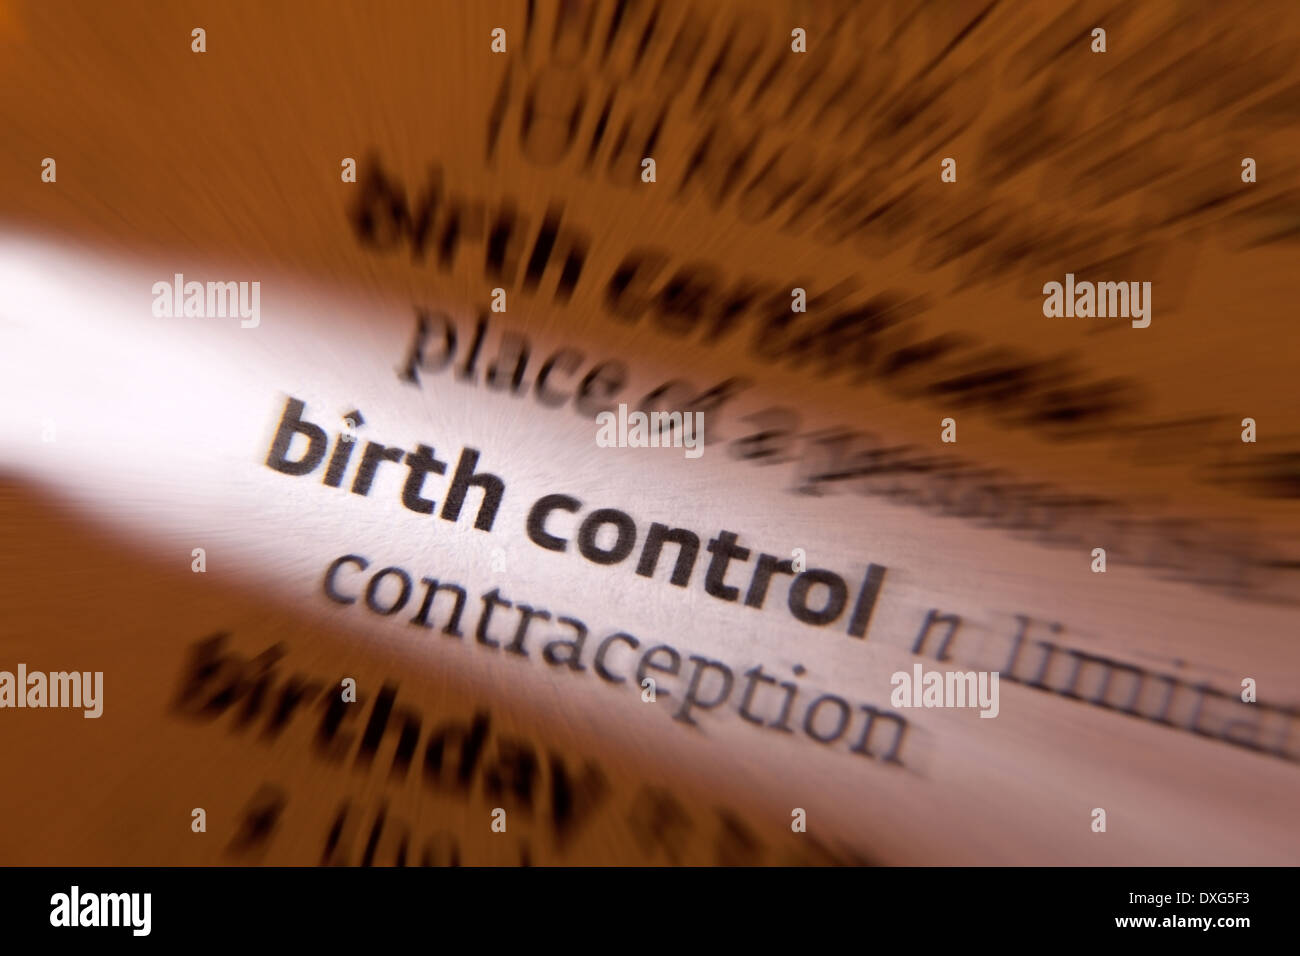 Birth Control - die Praxis der Prävention ungewollter Schwangerschaften, in der Regel durch die Verwendung von Verhütungsmitteln. Stockfoto